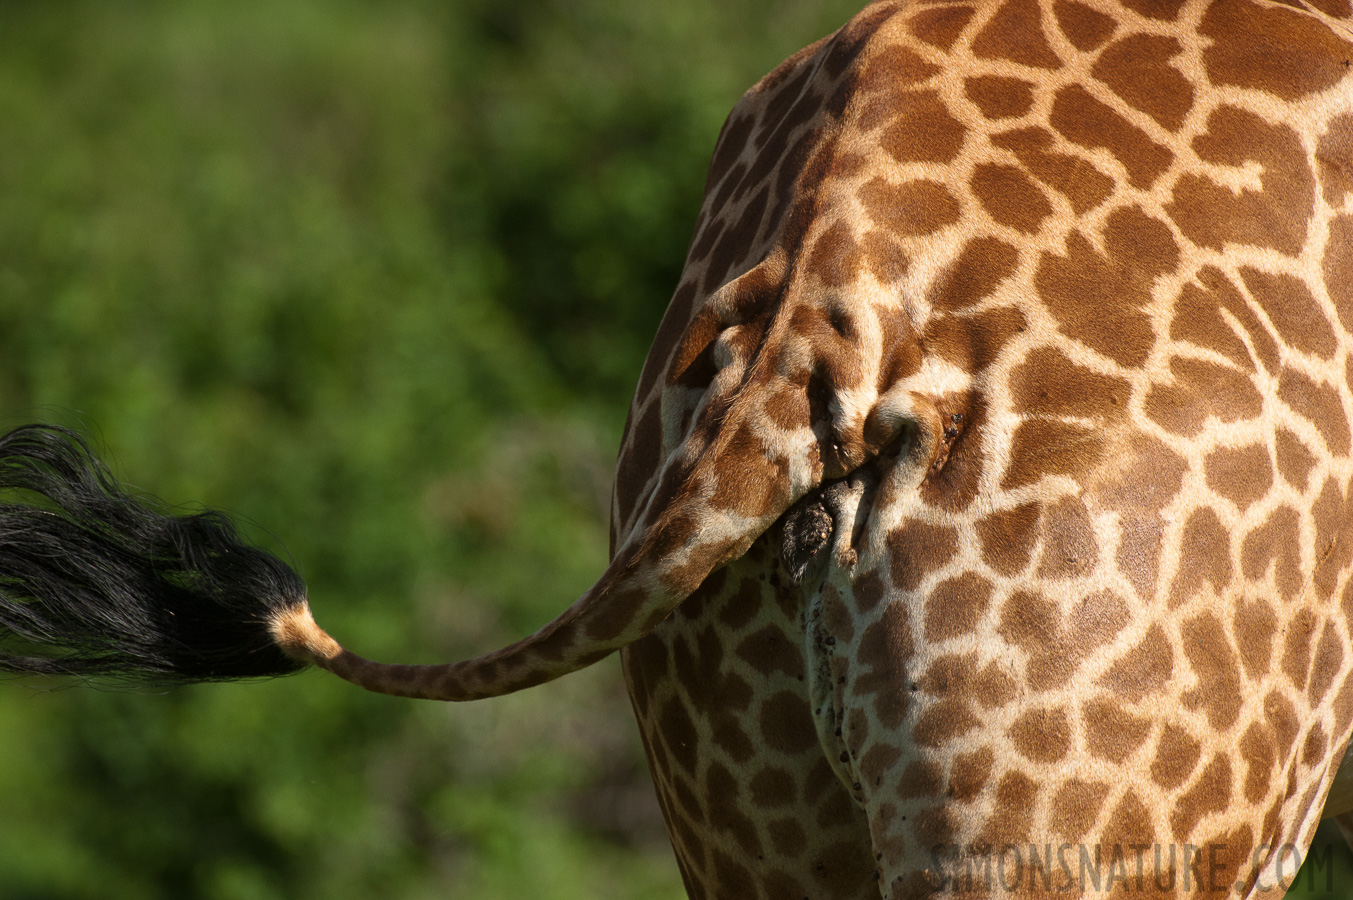 Giraffa tippelskirchi [550 mm, 1/3200 sec at f / 8.0, ISO 1600]